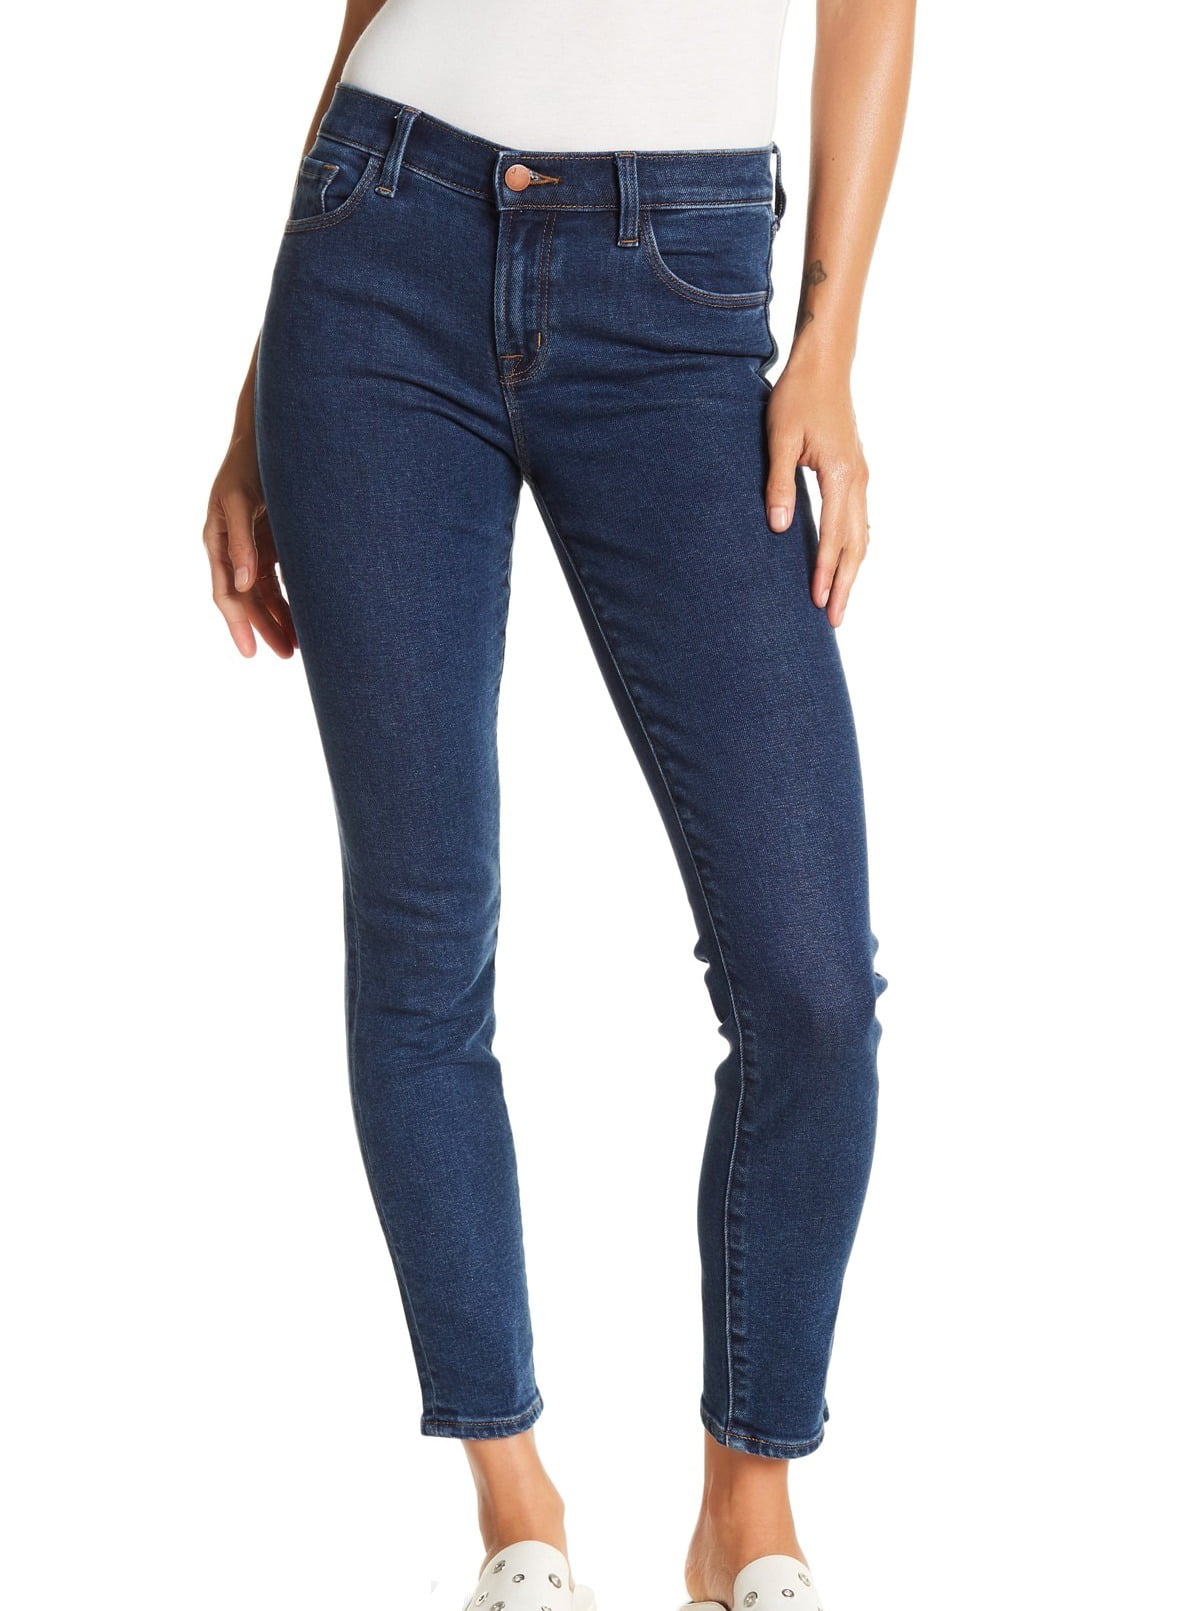 J BRAND - Womens Jeans Dinstinct 29x28 Skinny Leg Mid-Rise 29 - Walmart ...